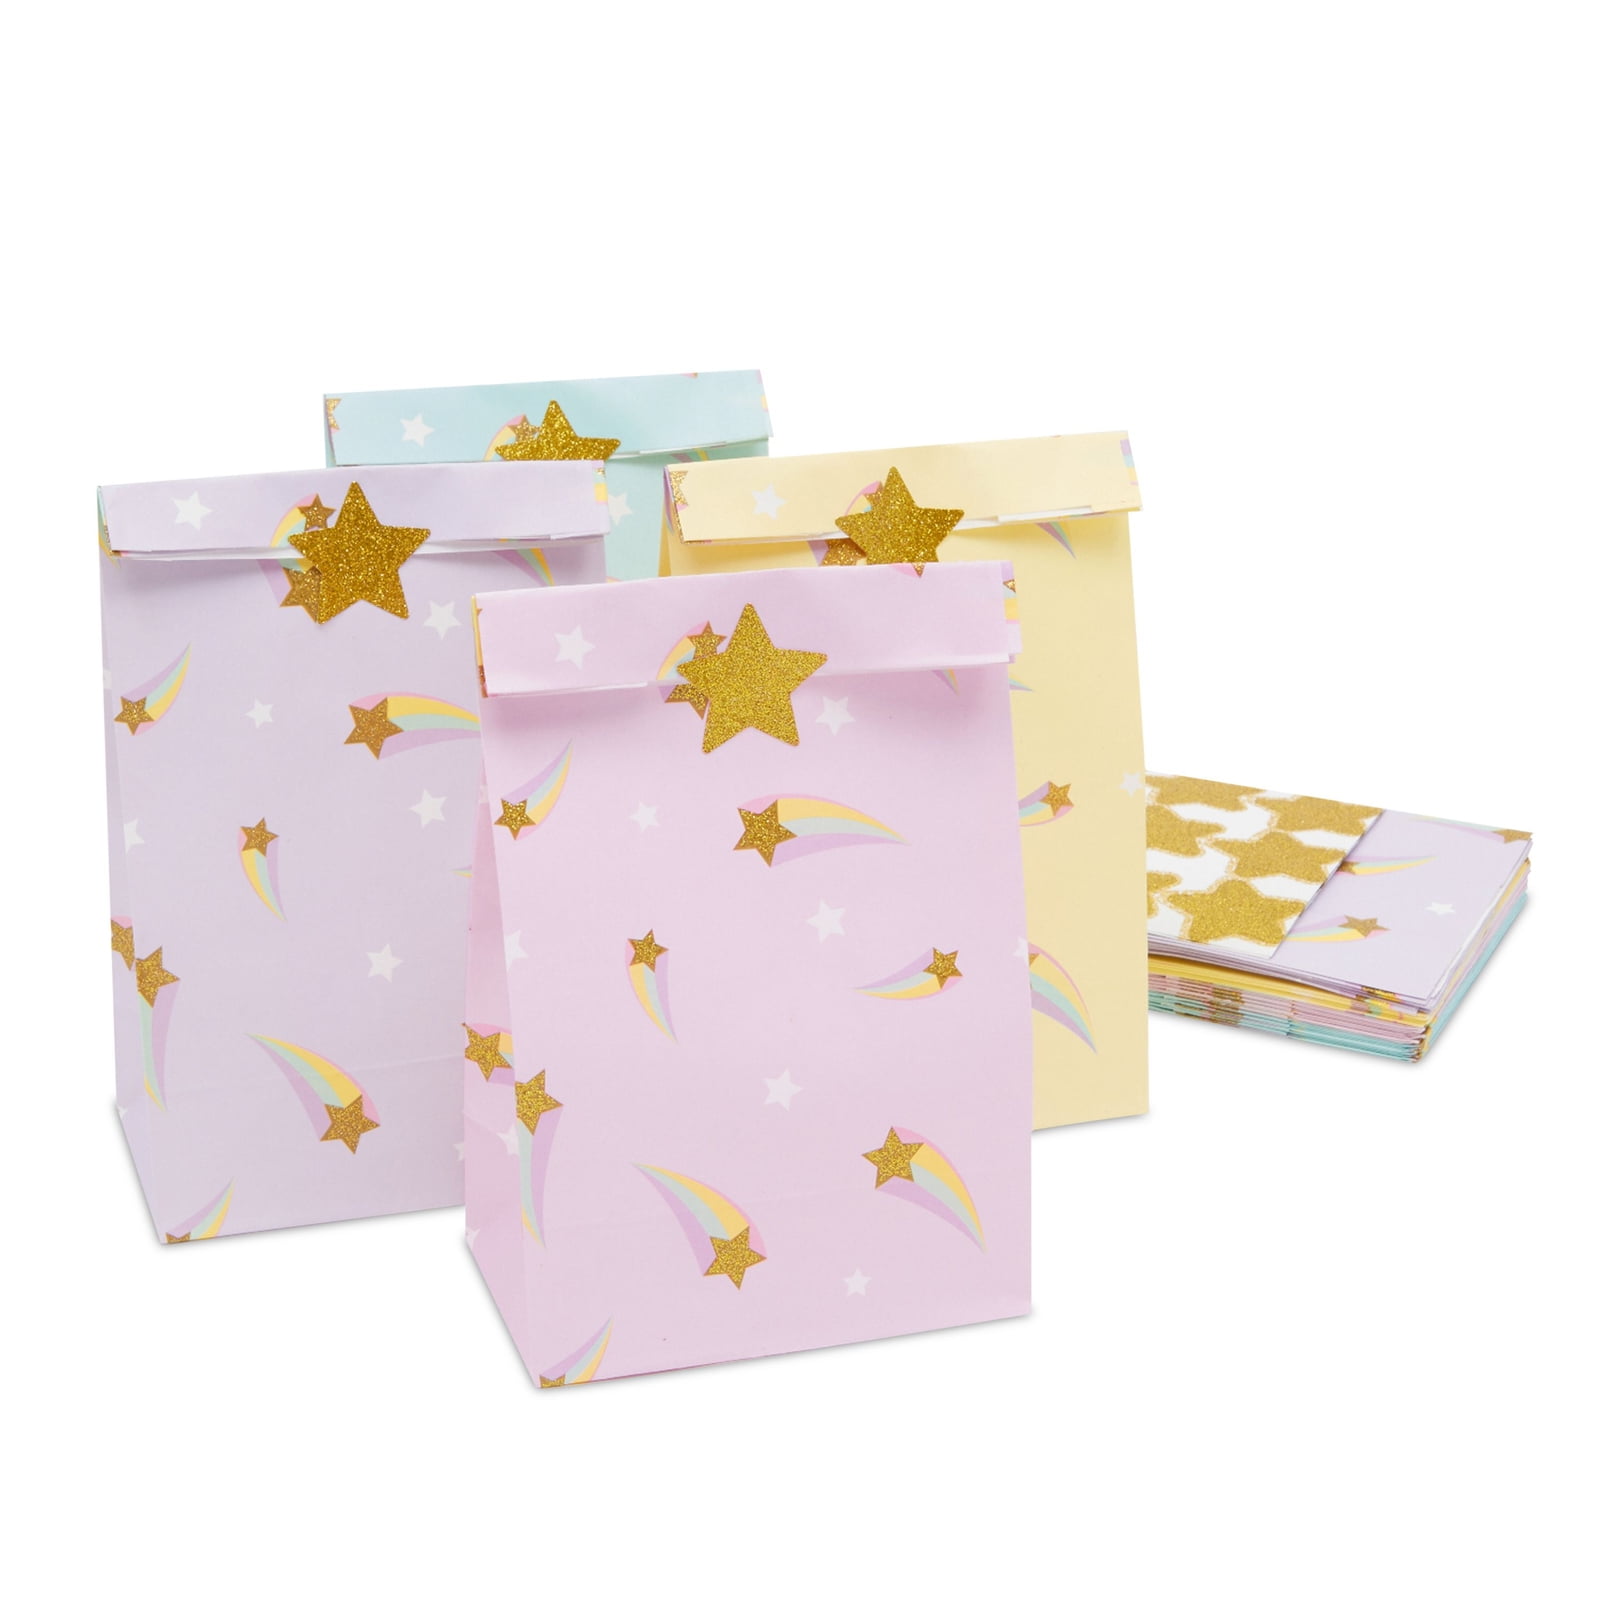 Fabric Gift Bag Linen Canvas Gift Bags Golden Stars 7.5 X 9.5 